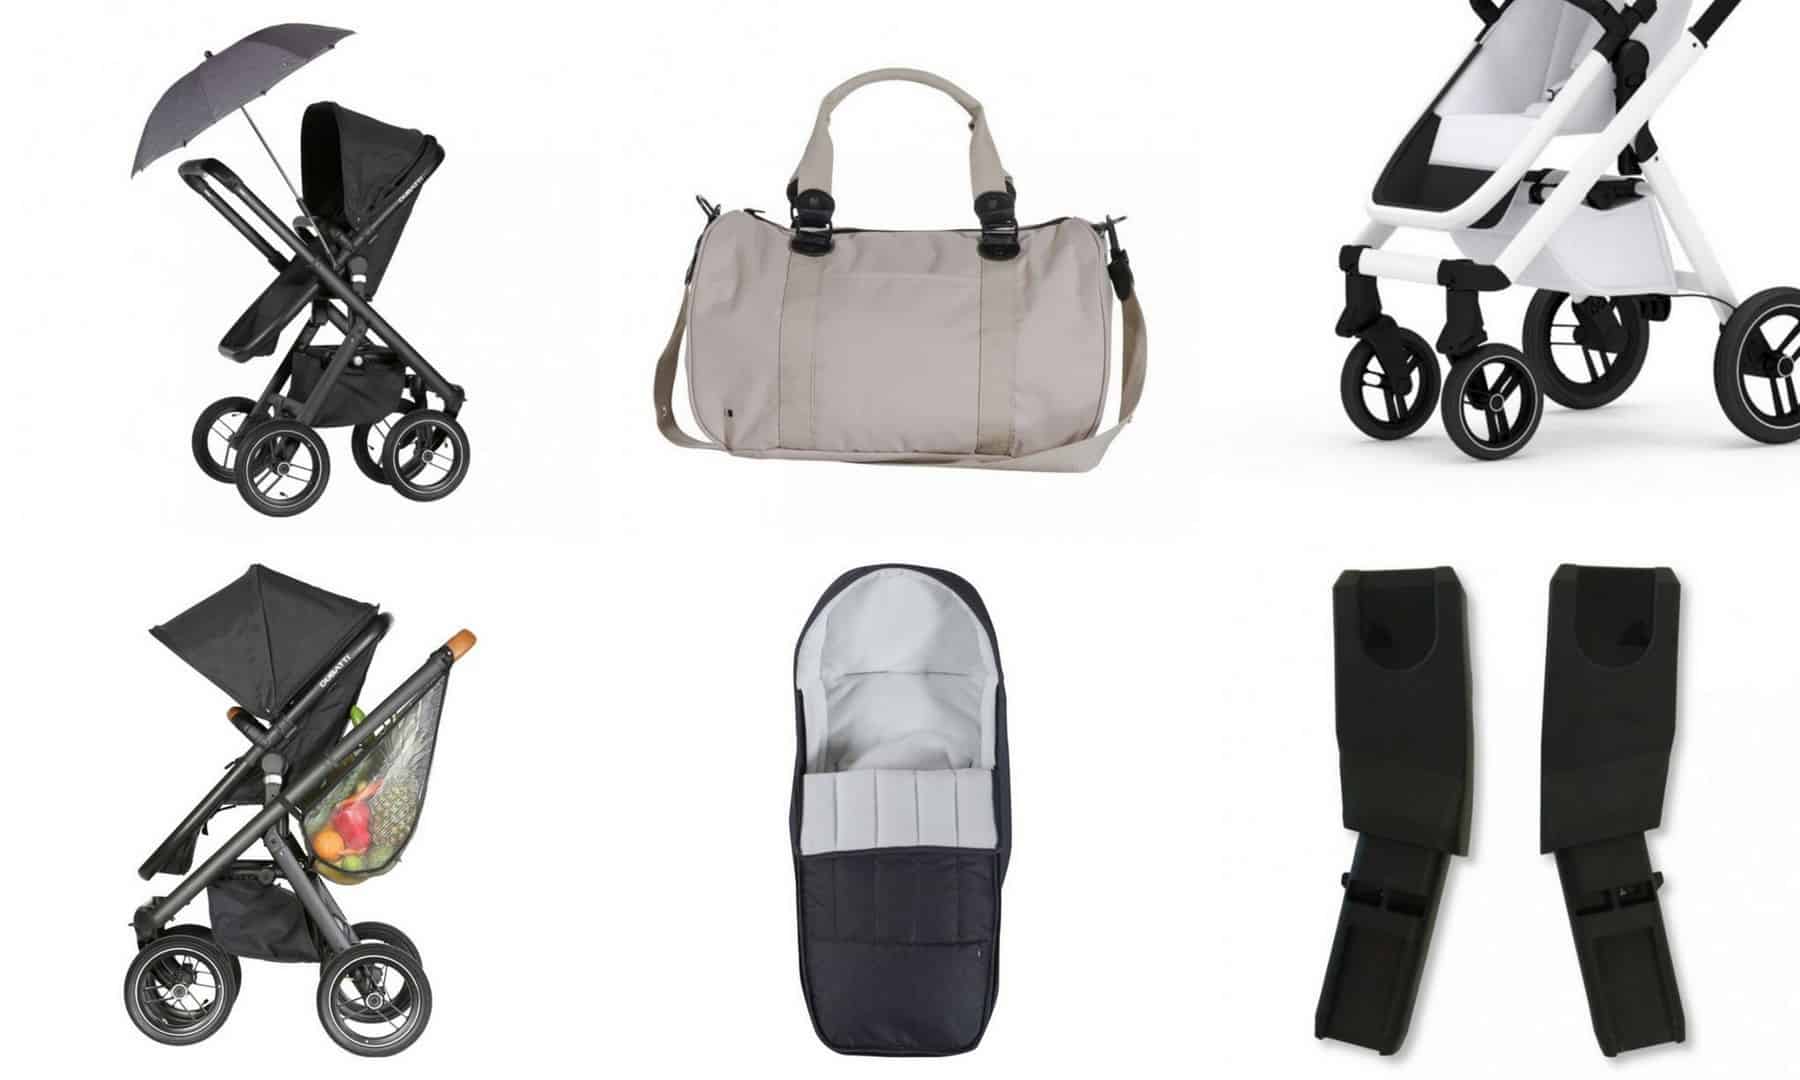 accessories for dubatti stroller, review